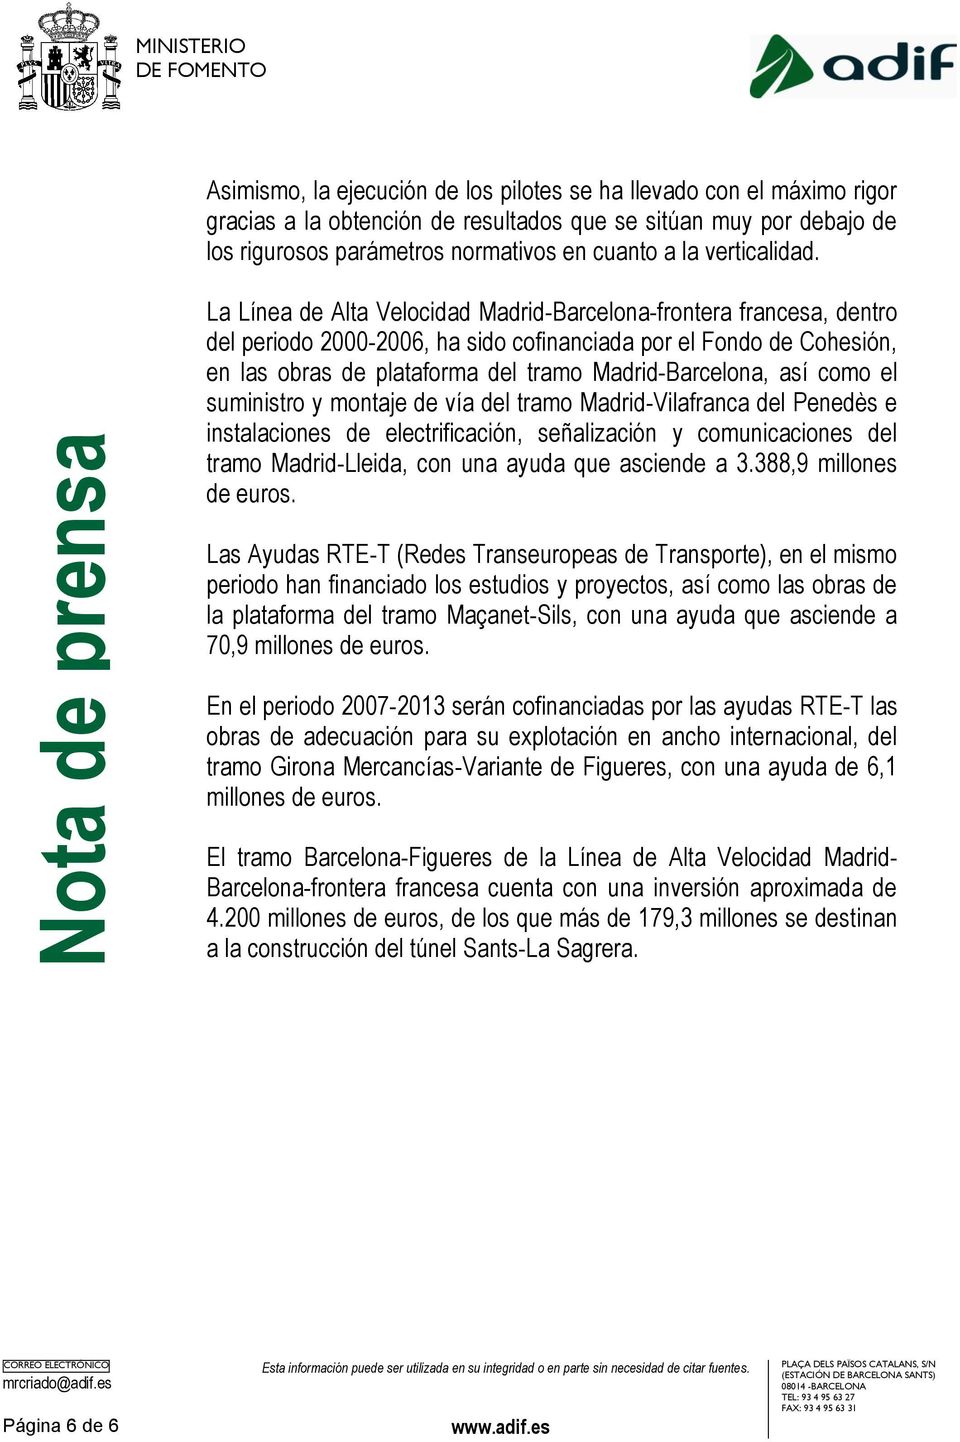 La Línea de Alta Velocidad Madrid-Barcelona-frontera francesa, dentro del periodo 2000-2006, ha sido cofinanciada por el Fondo de Cohesión, en las obras de plataforma del tramo Madrid-Barcelona, así